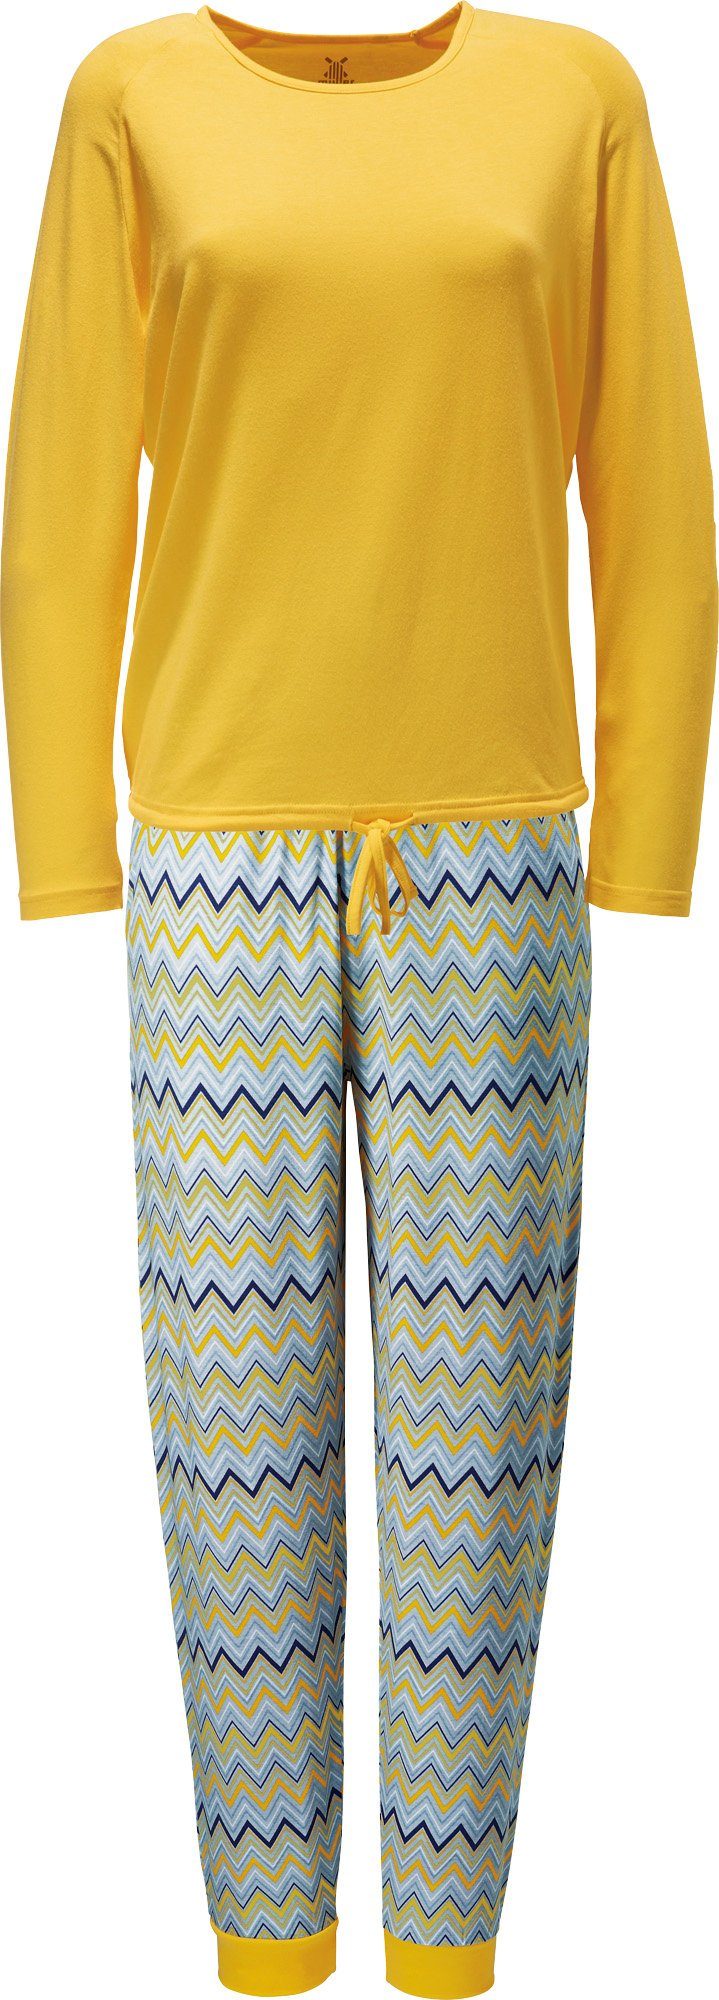 Erwin Müller Pyjama Damen-Schlafanzug Single-Jersey gemustert gelb